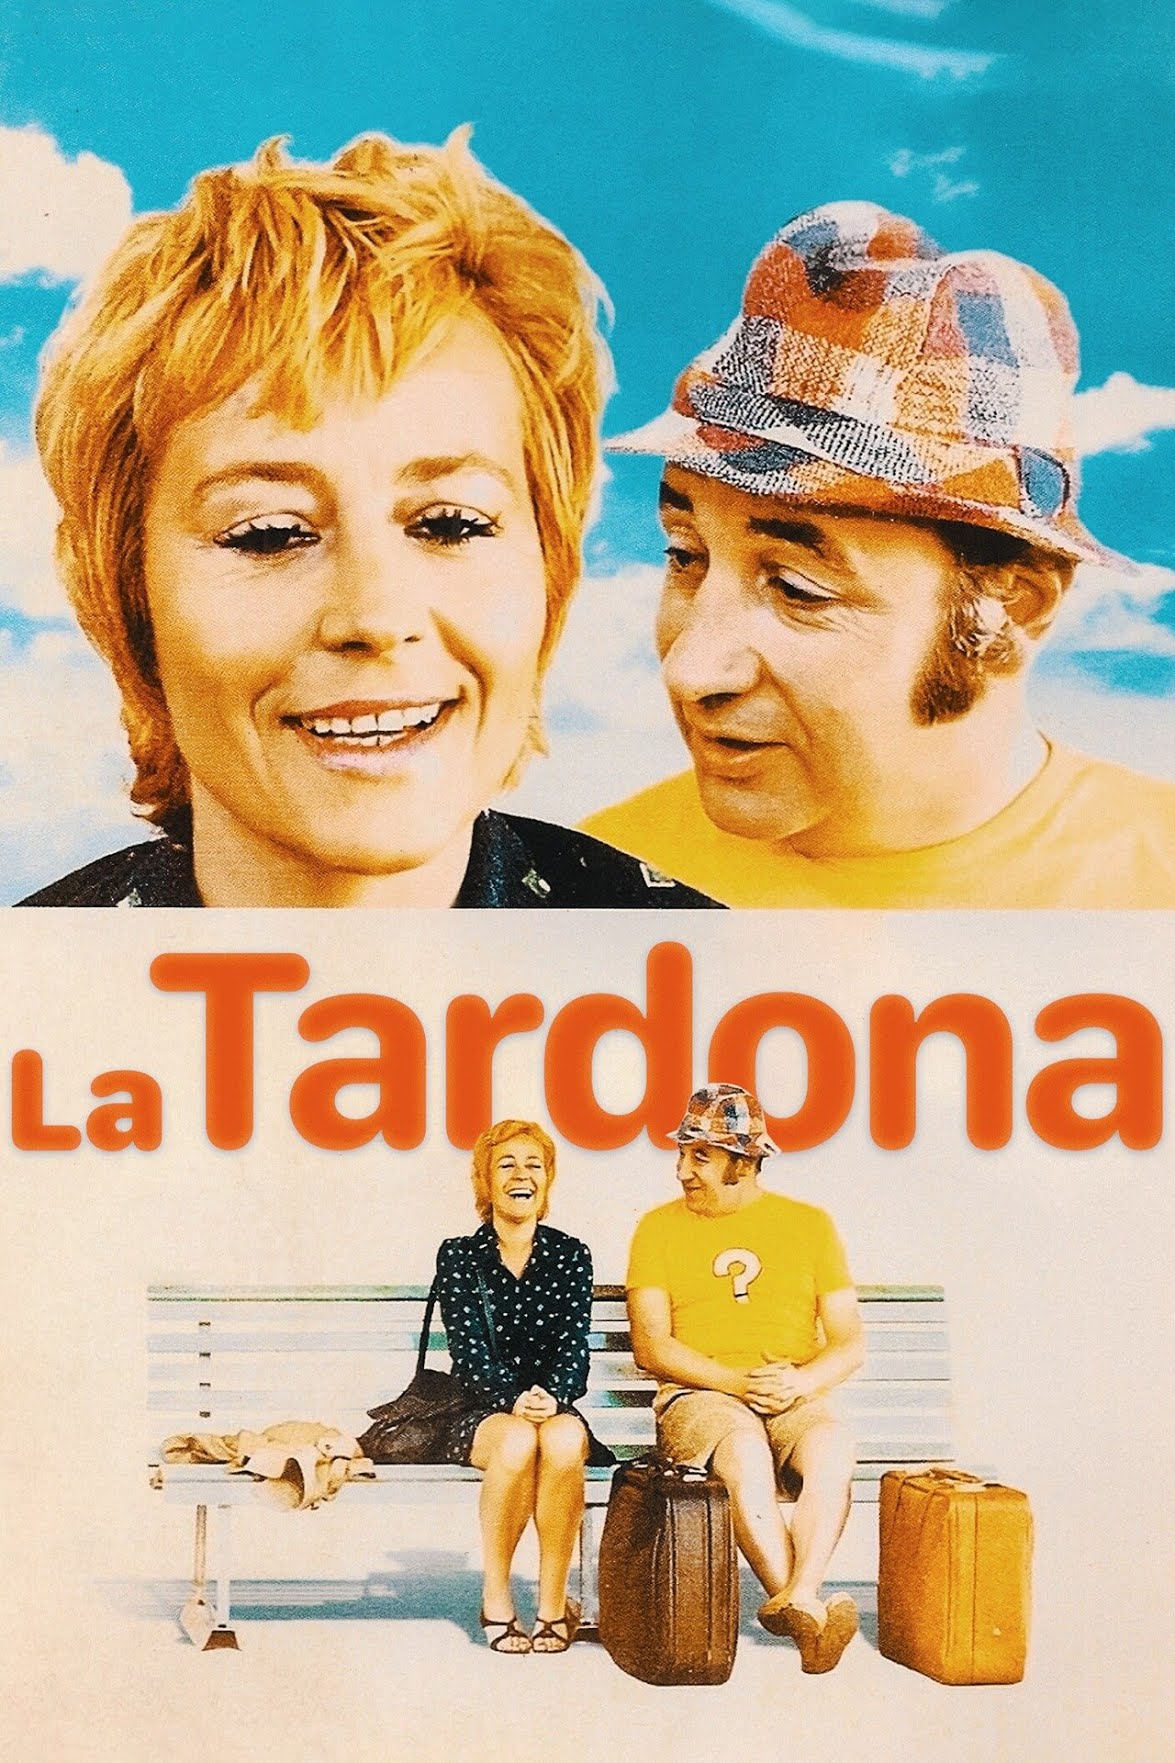 La tardona (1972)